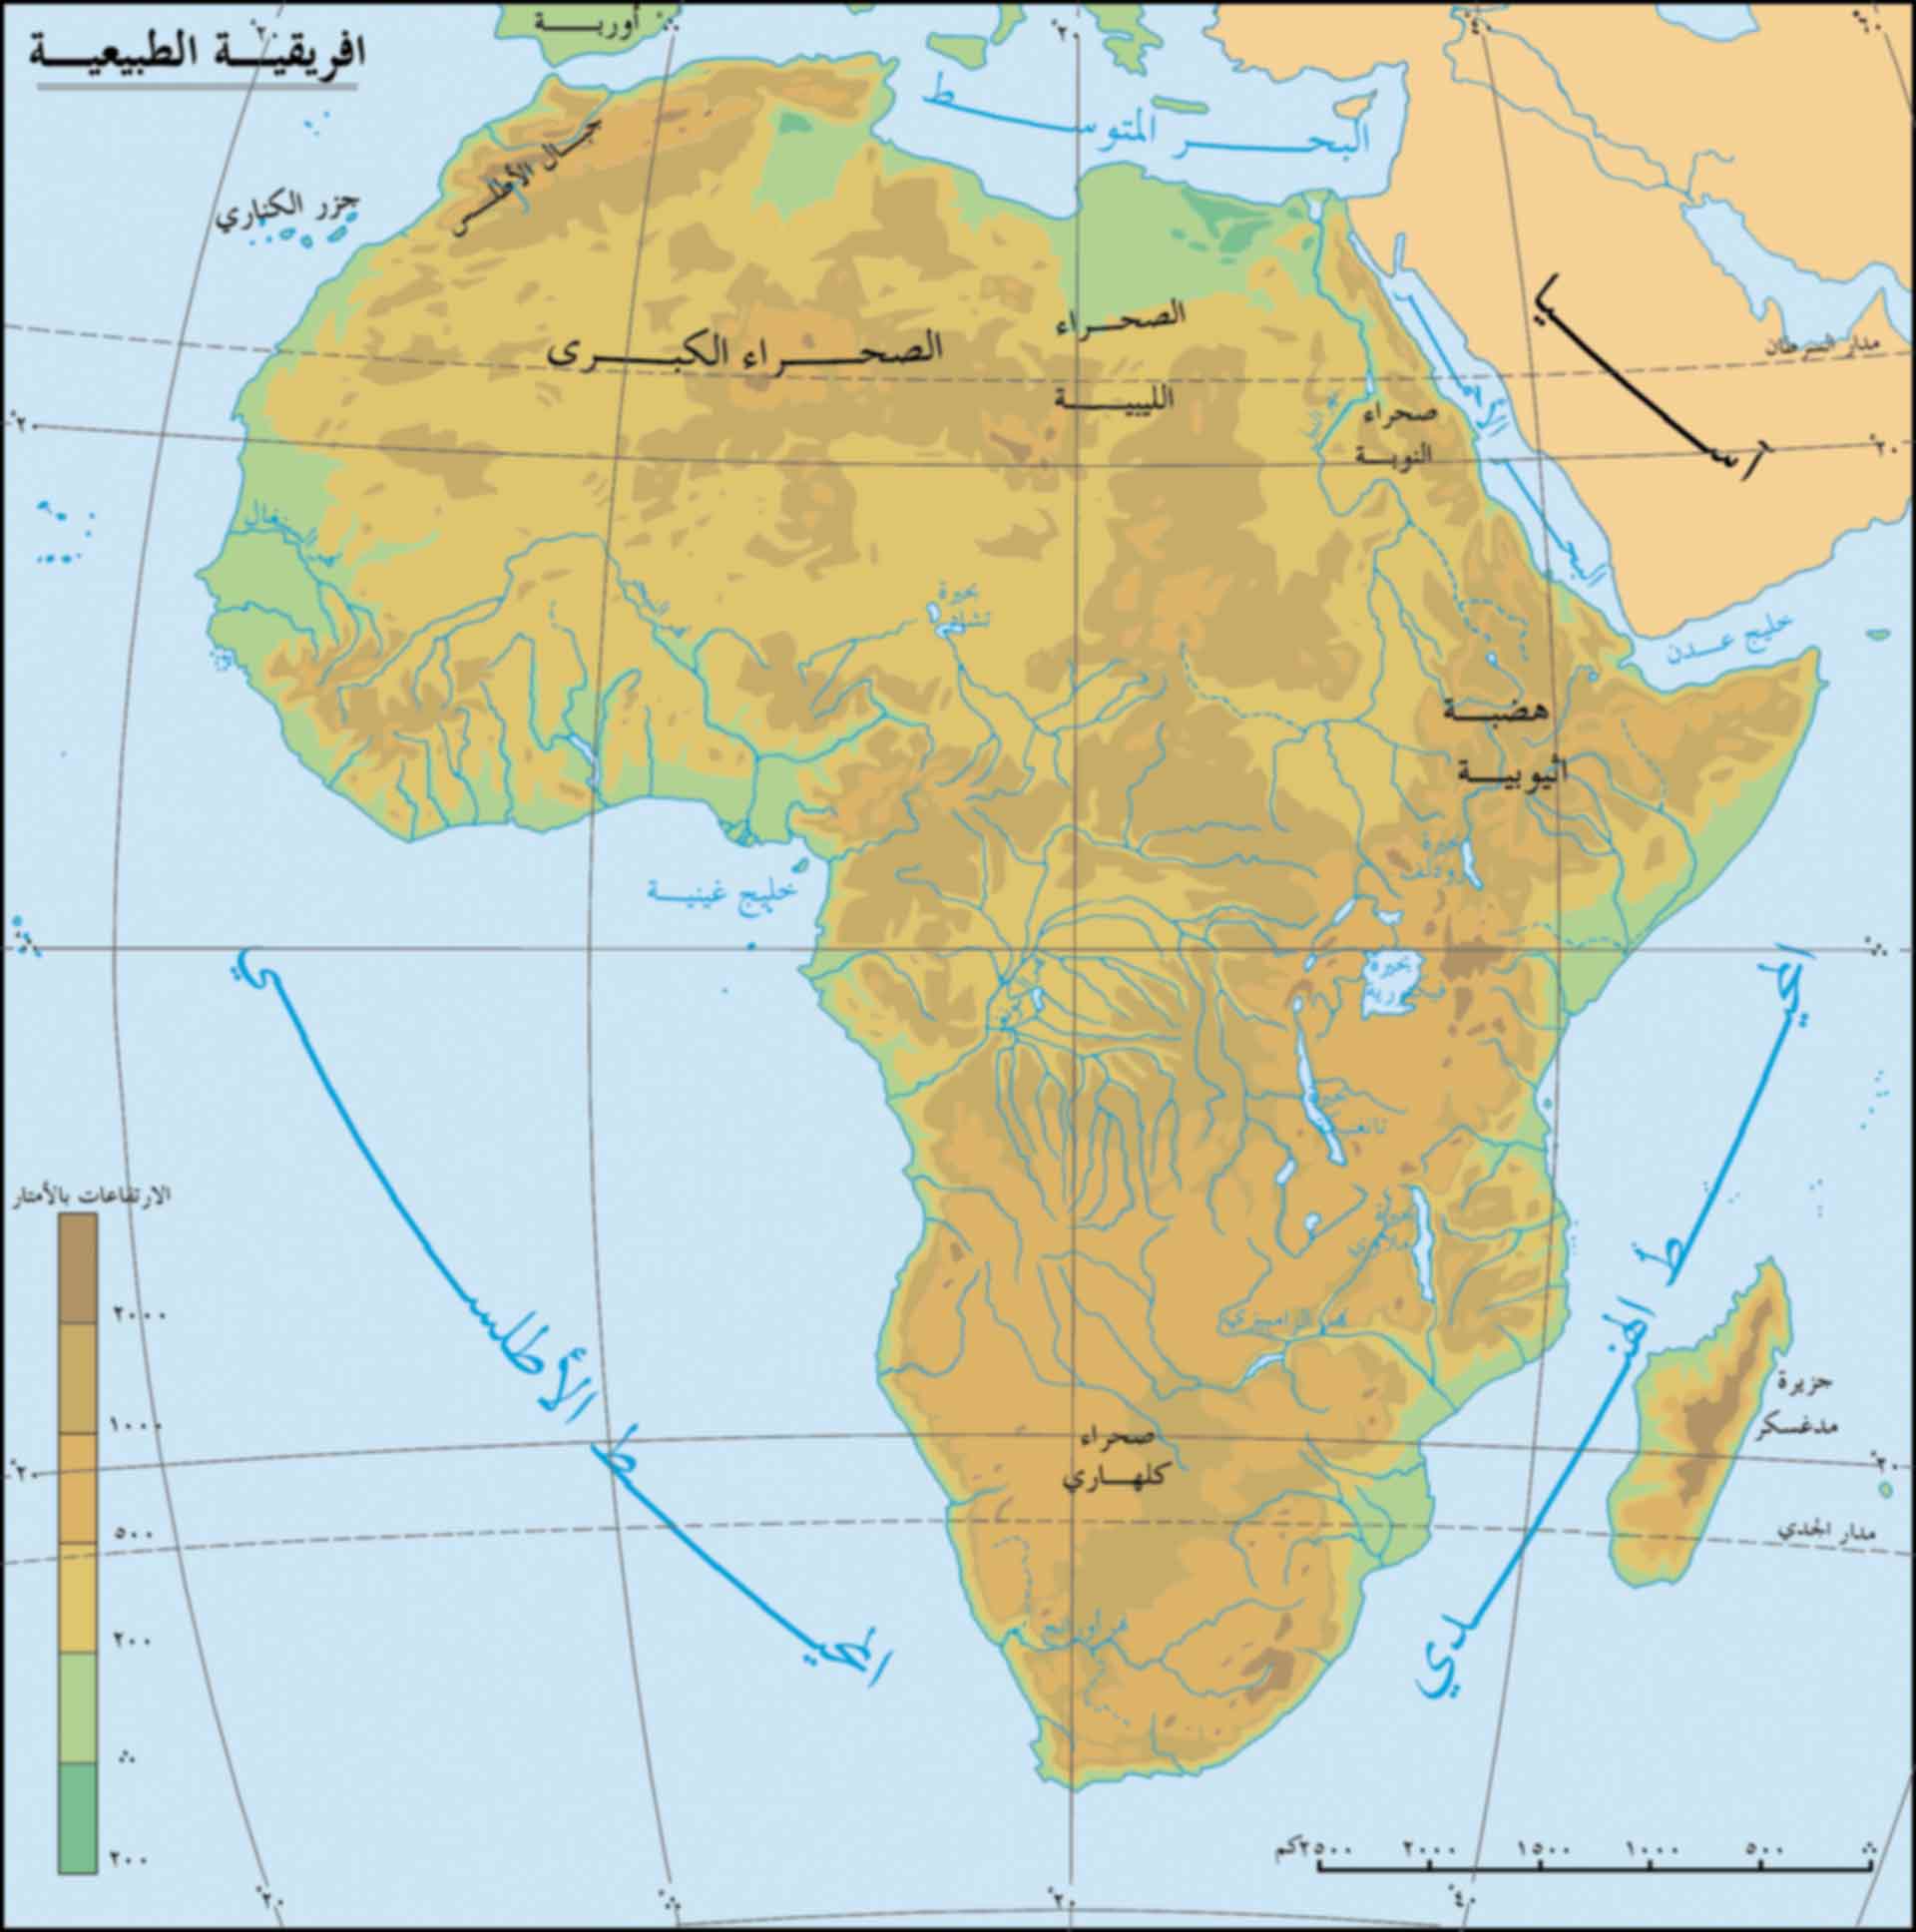 20160803 1465 كم عدد الدول العربية في افريقيا شهناز صالح